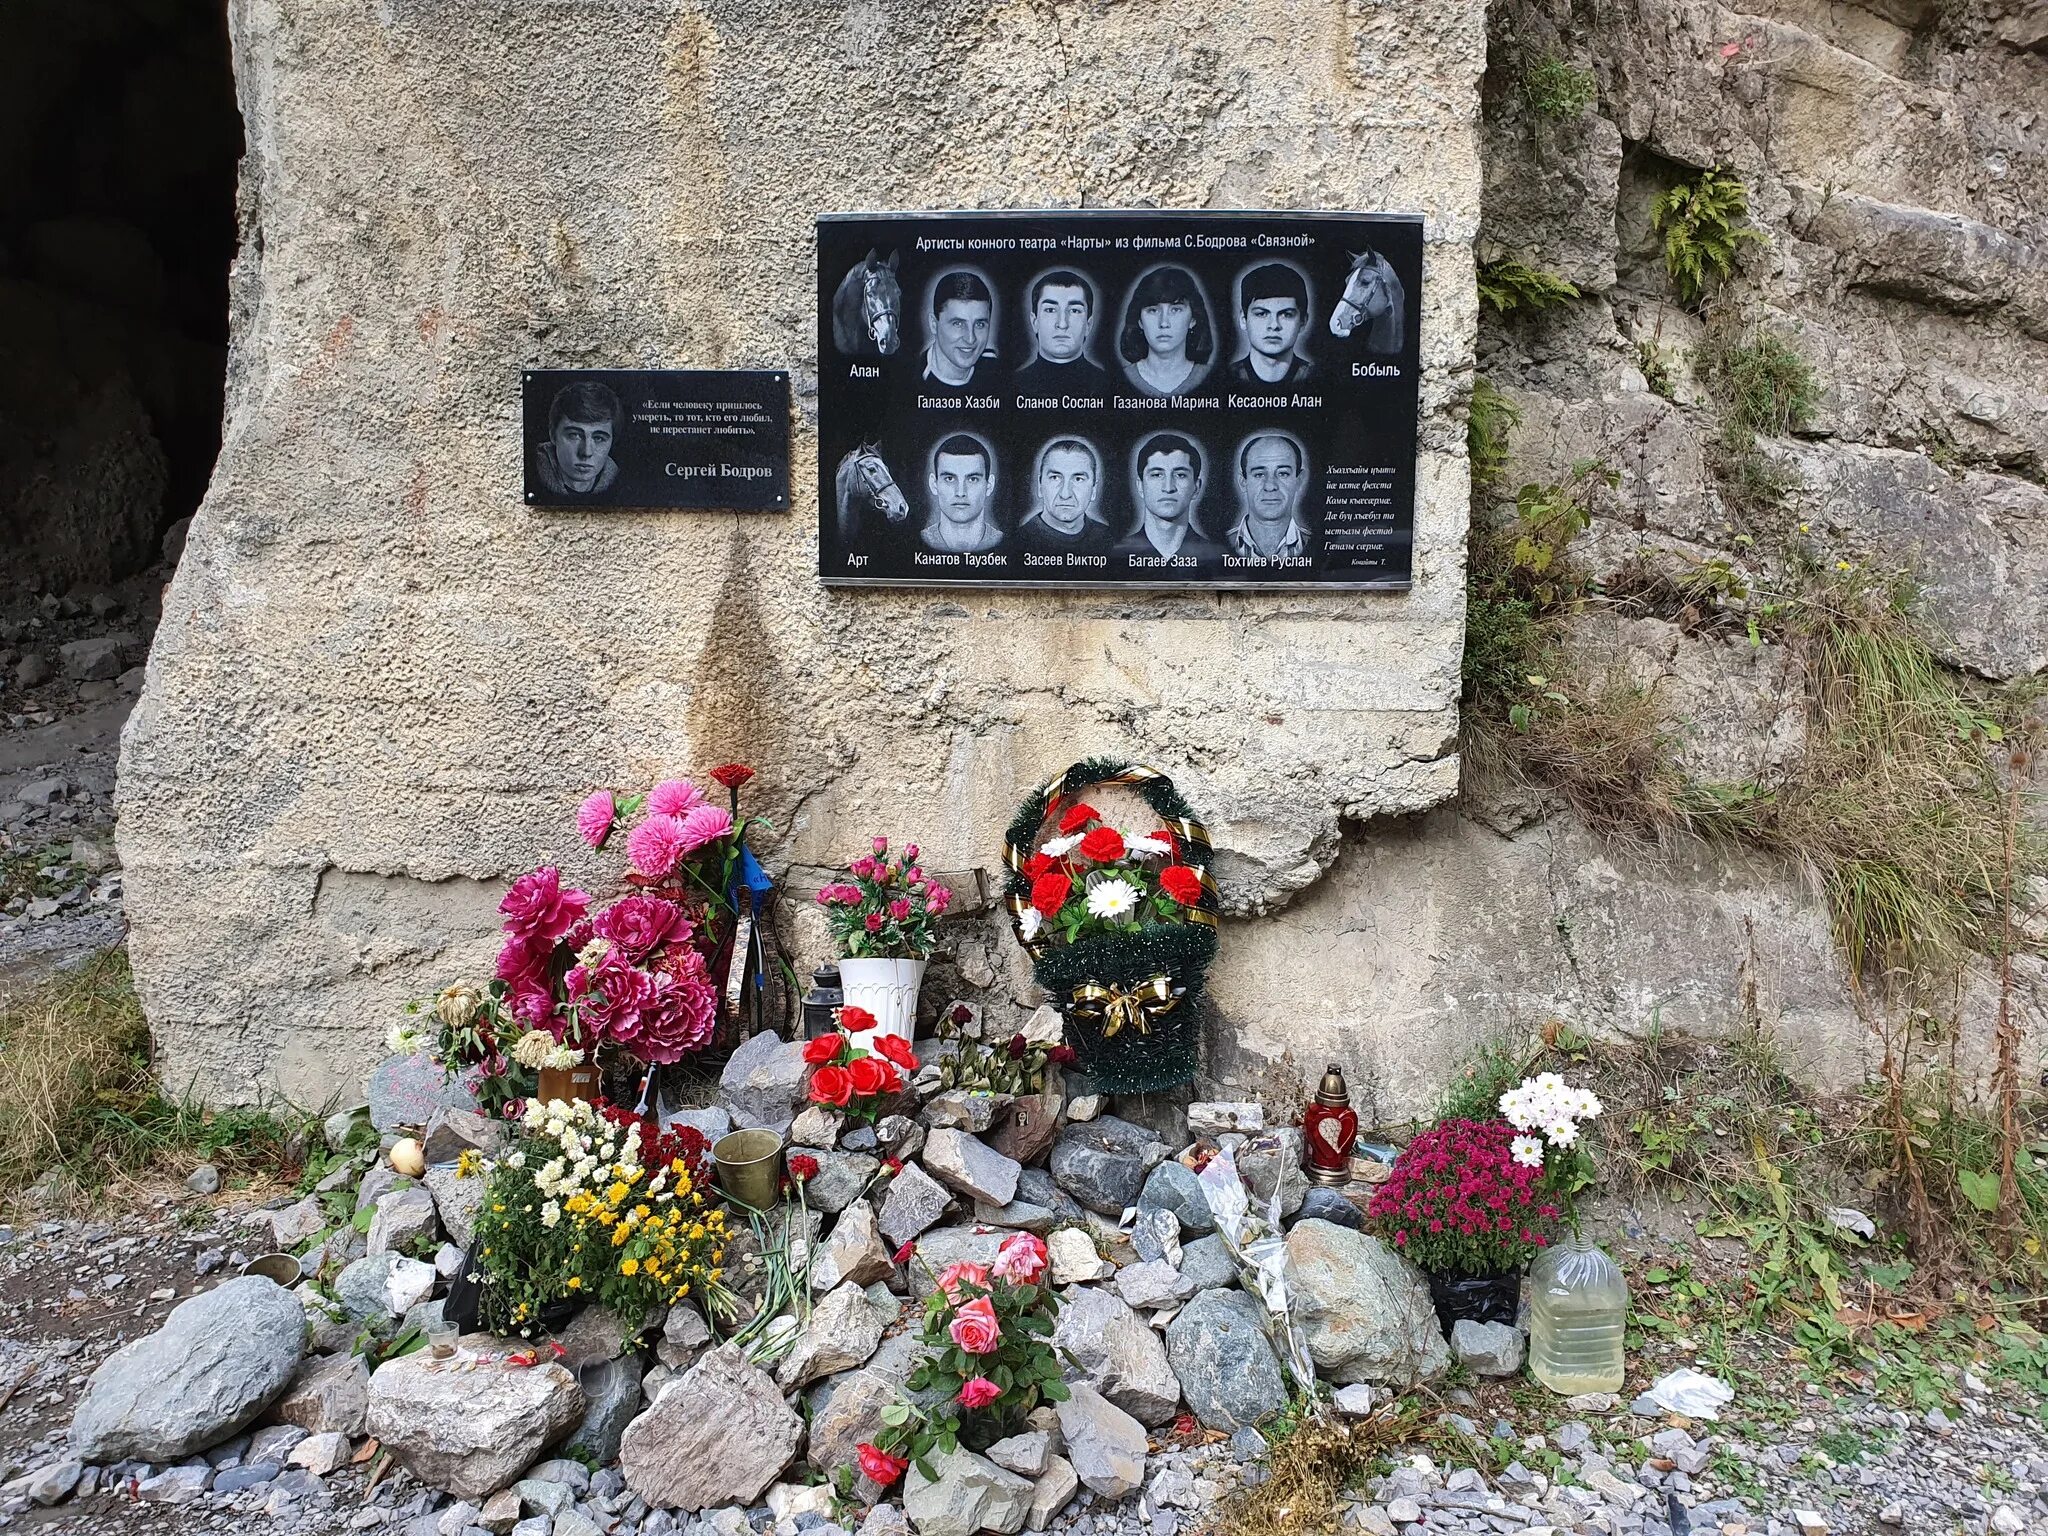 Мемориал Бодрову Кармадонское ущелье. Кармадонское ущелье могила Бодрова. Куда пропала память